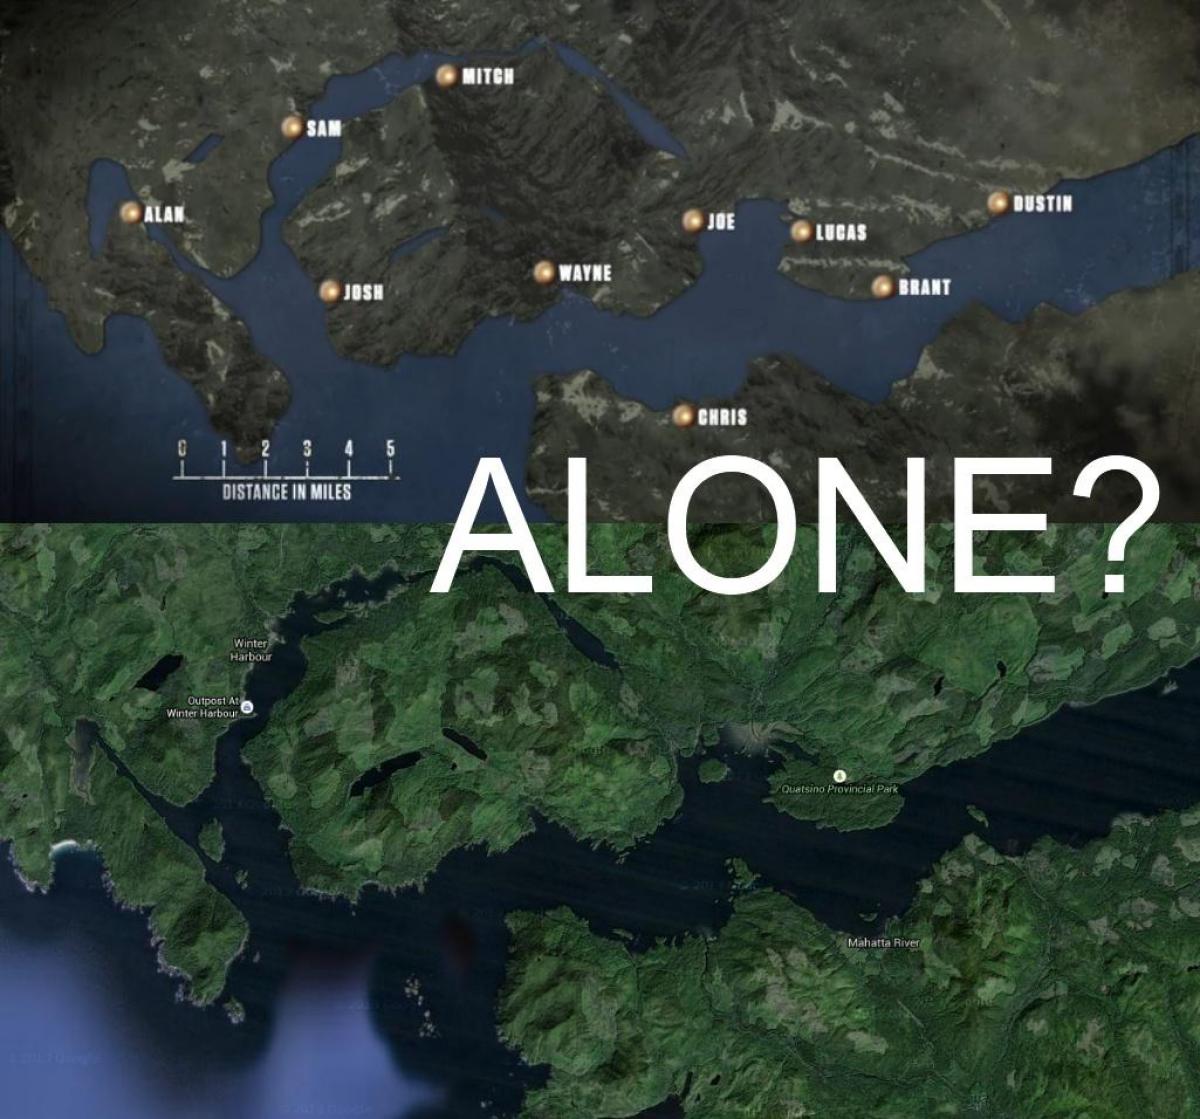 نقشہ وینکوور کے جزیرے اکیلے